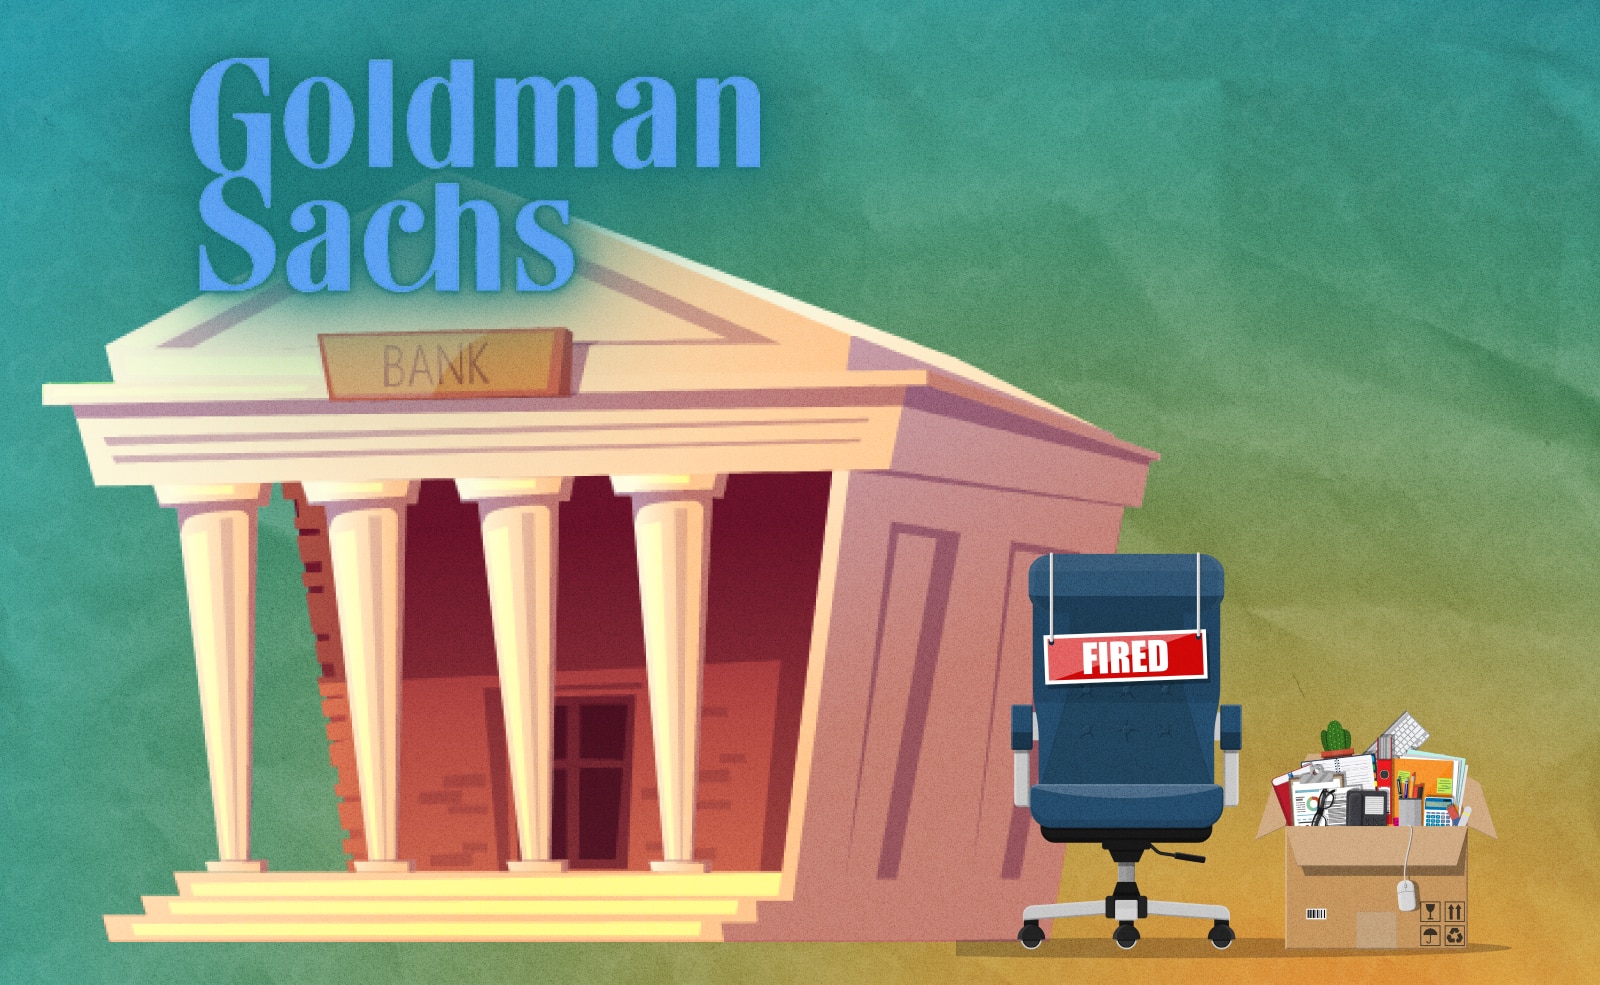 Goldman Sachs со среды начнет масштабное увольнение. Под него попадут 3000 работников